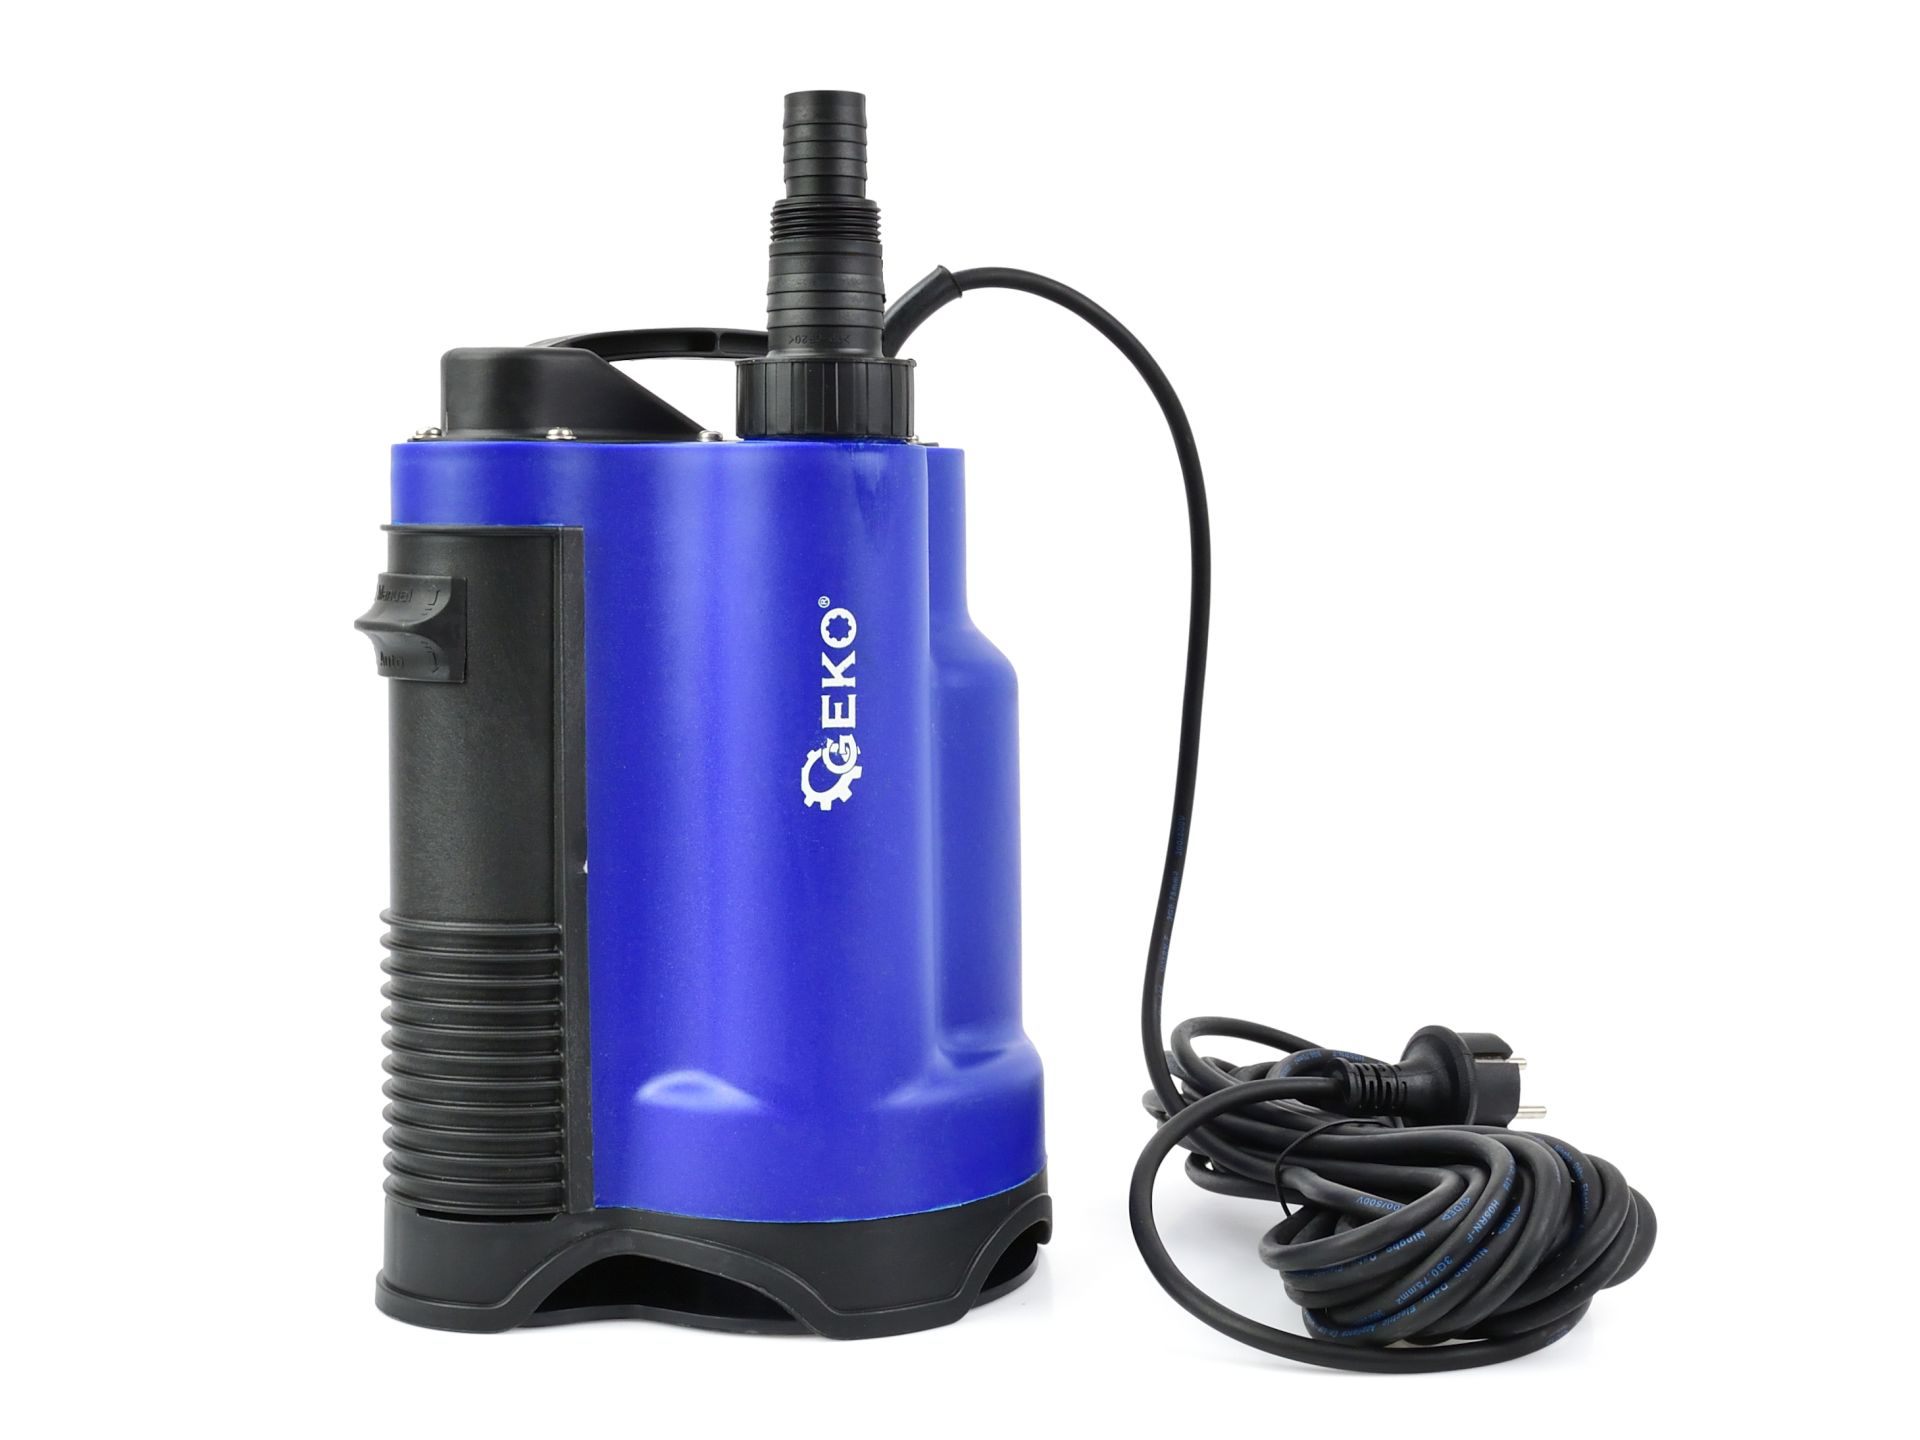 Pompa submersibila pentru pentru apa curata / murdara cu plutitor, 750 W, Geko G81459